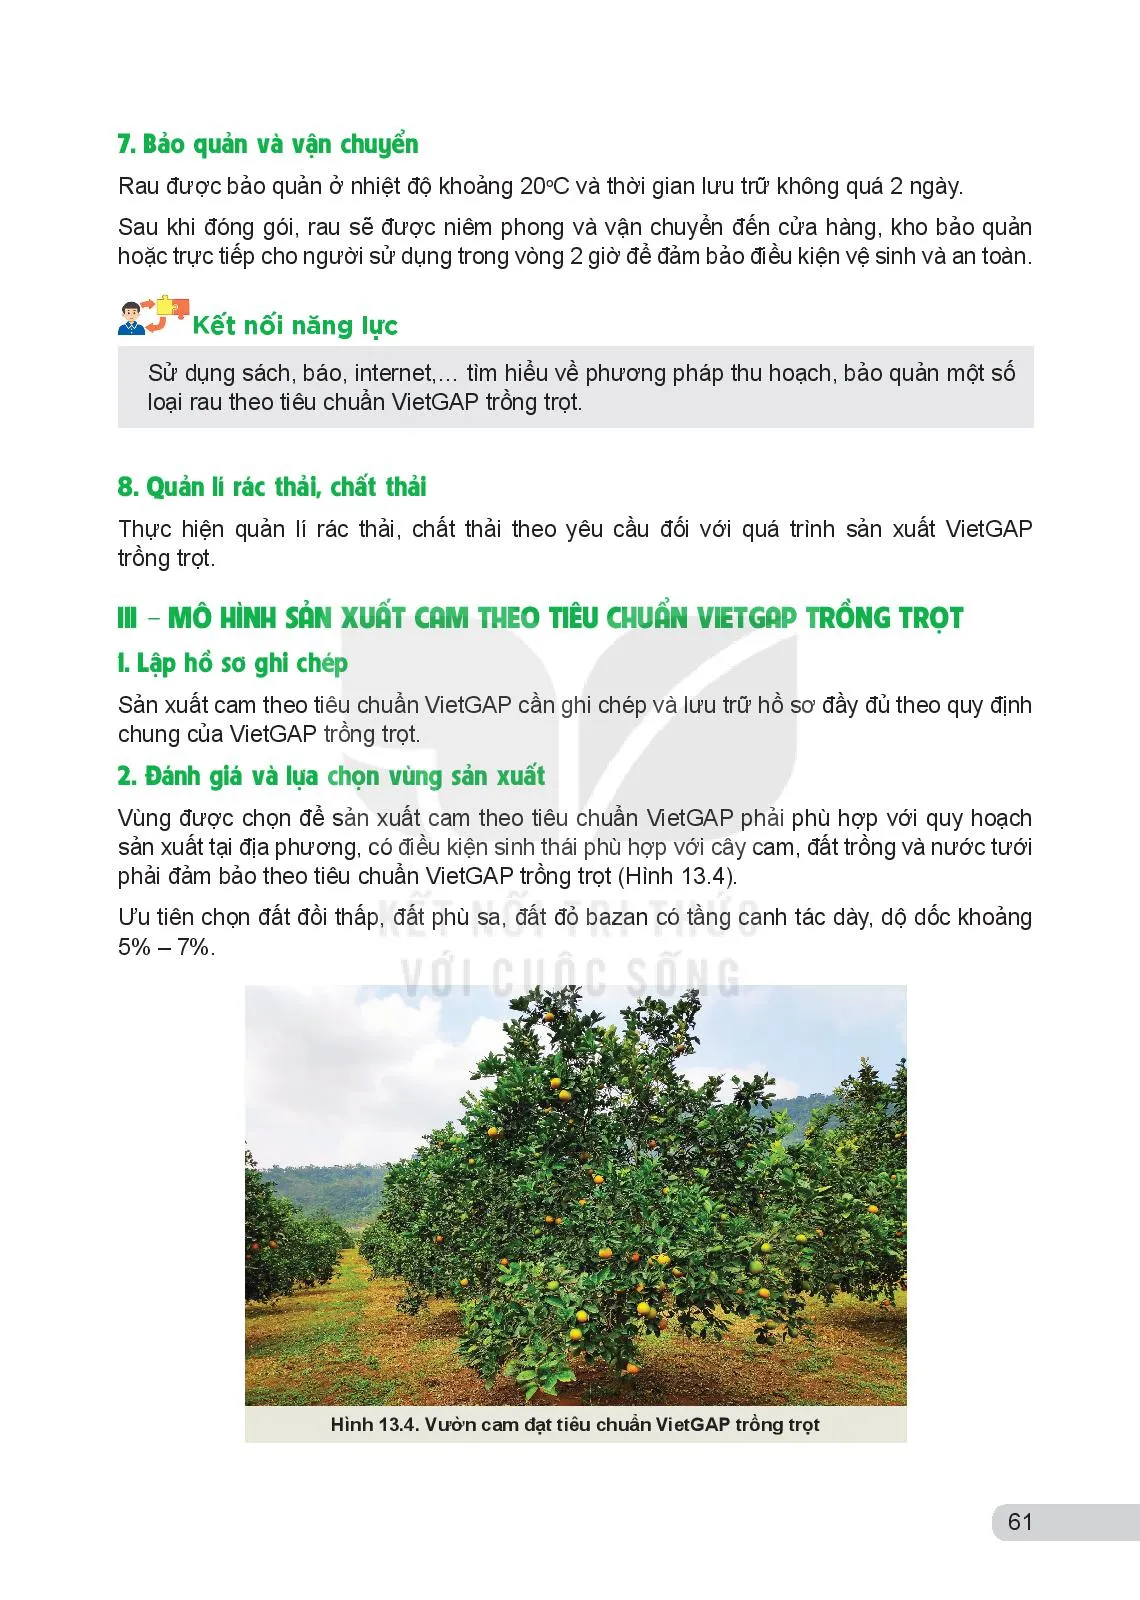 Bài 13. Một số mô hình trồng trọt theo tiêu chuẩn VietGAP